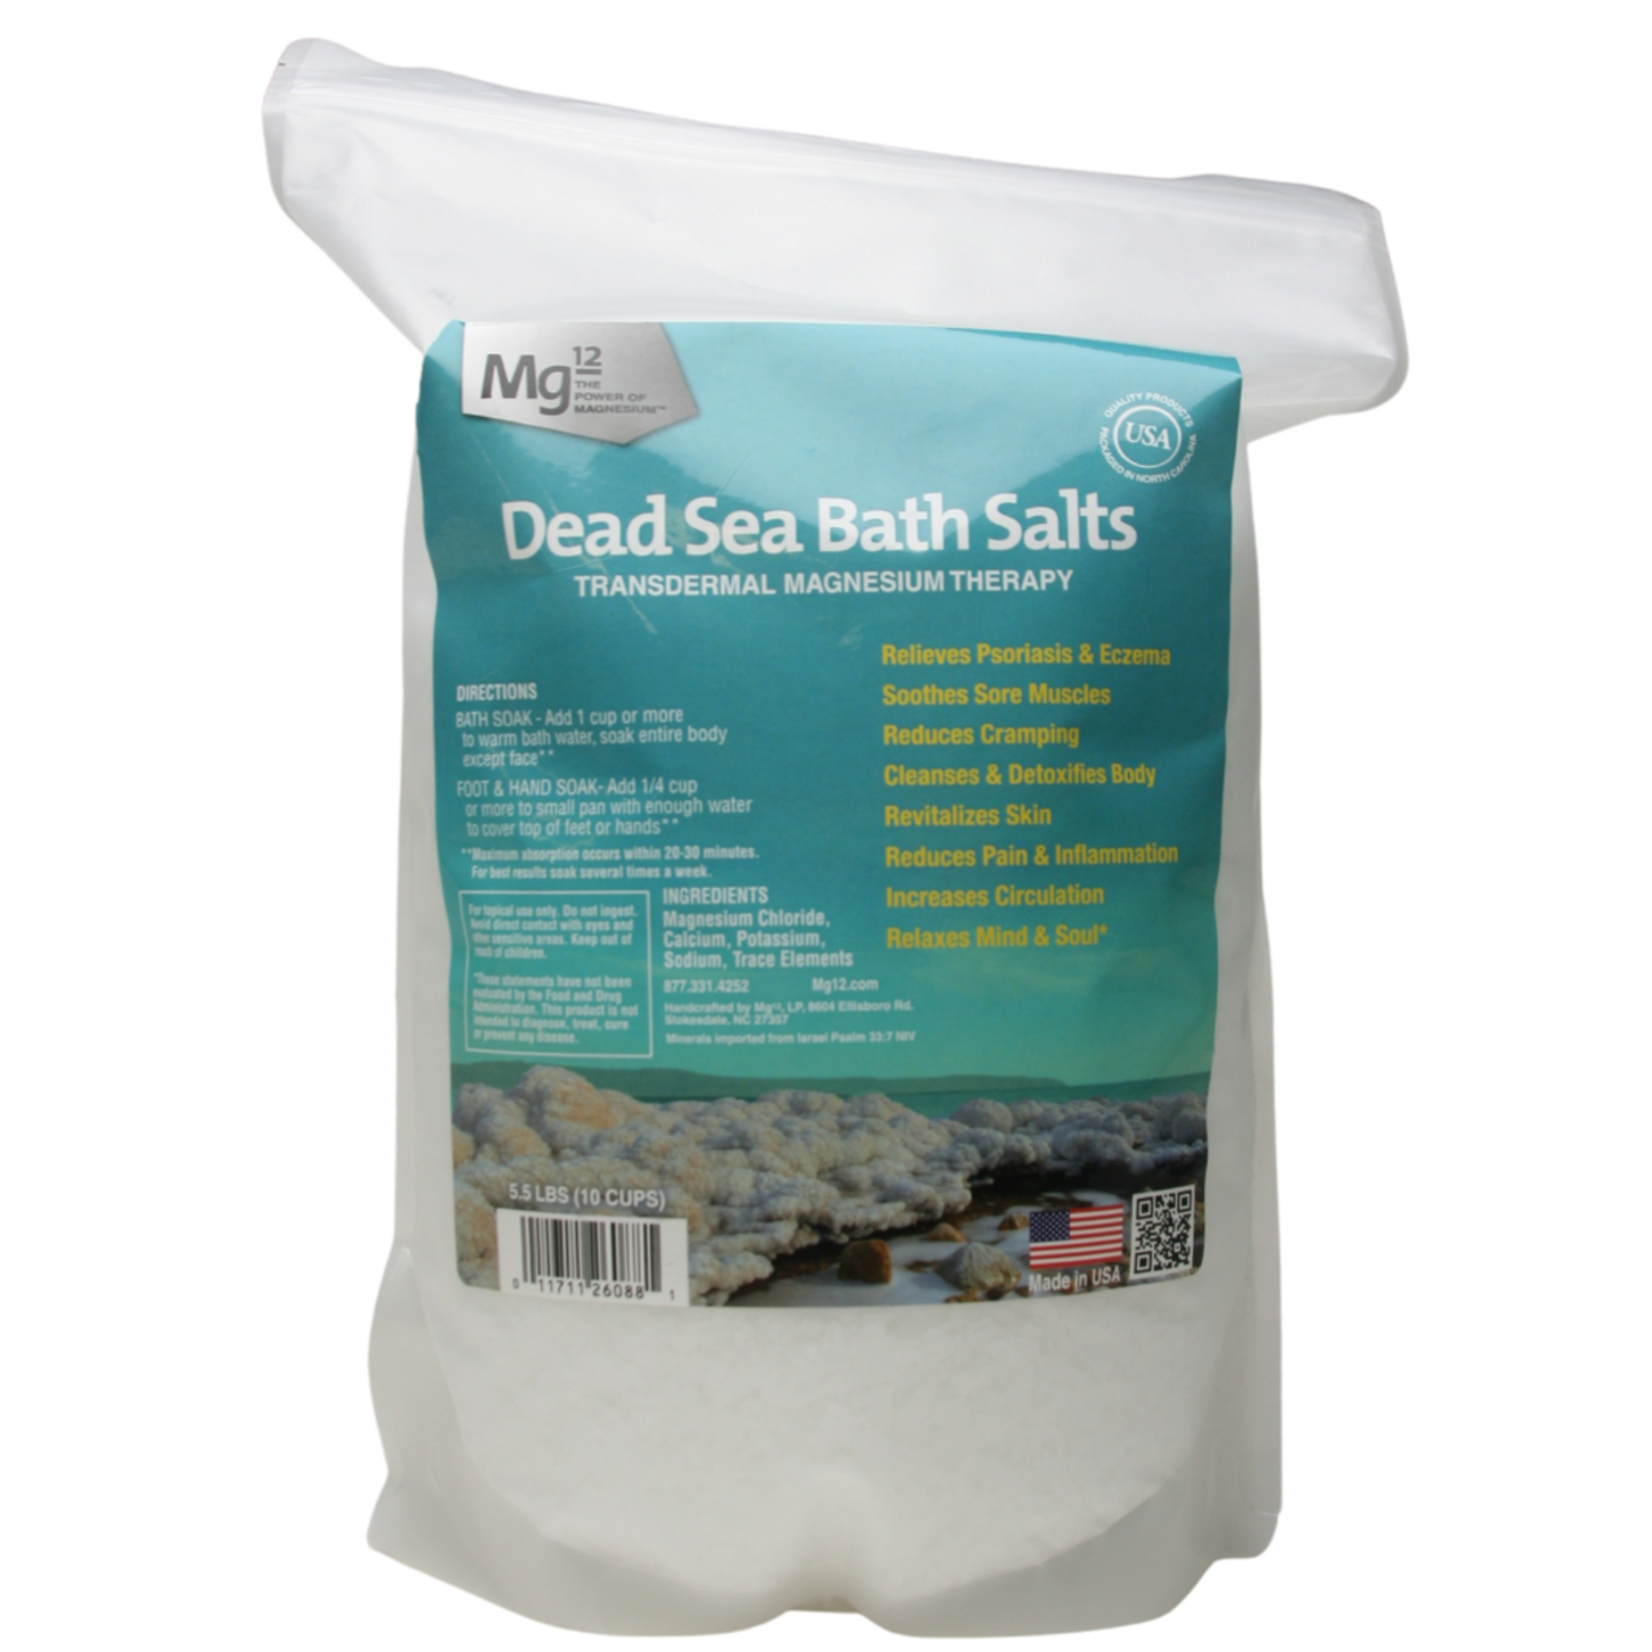 Mg12 Mg12 - Dead Sea Bath Salts - 5.5 lbs